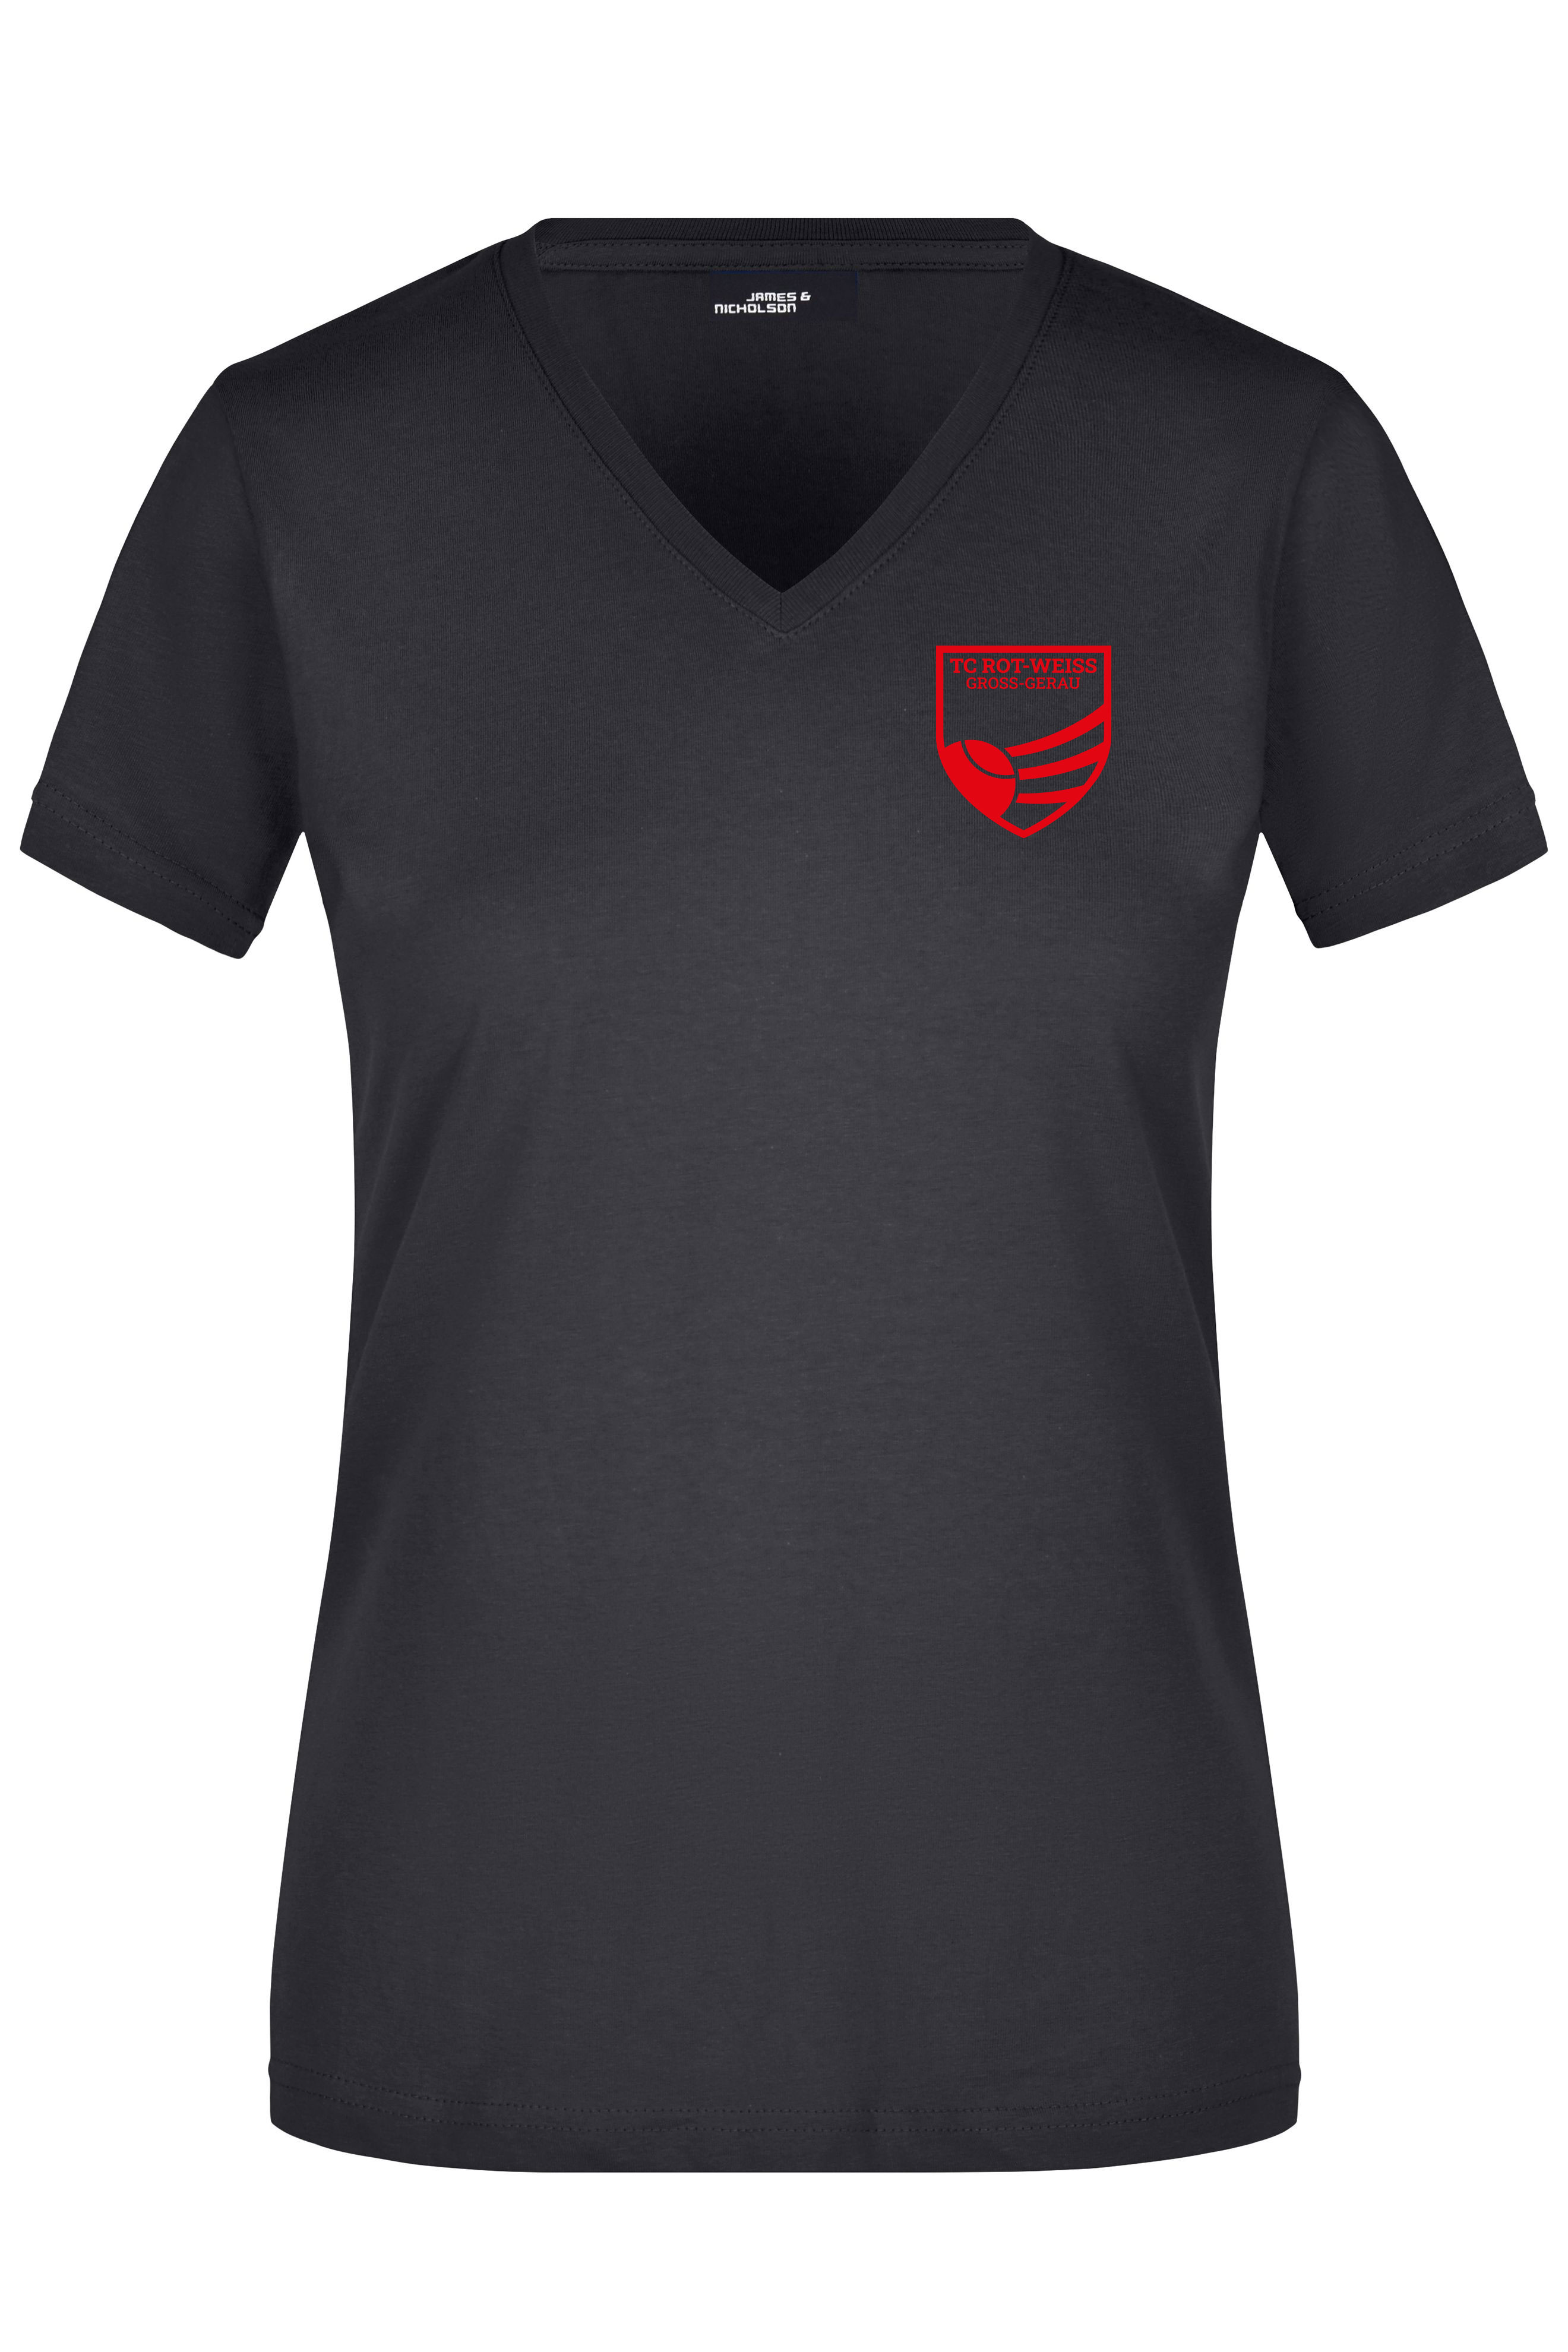 TC Rot-Weiss - Vorteil Dein Name - Girly T-Shirt rot auf schwarz